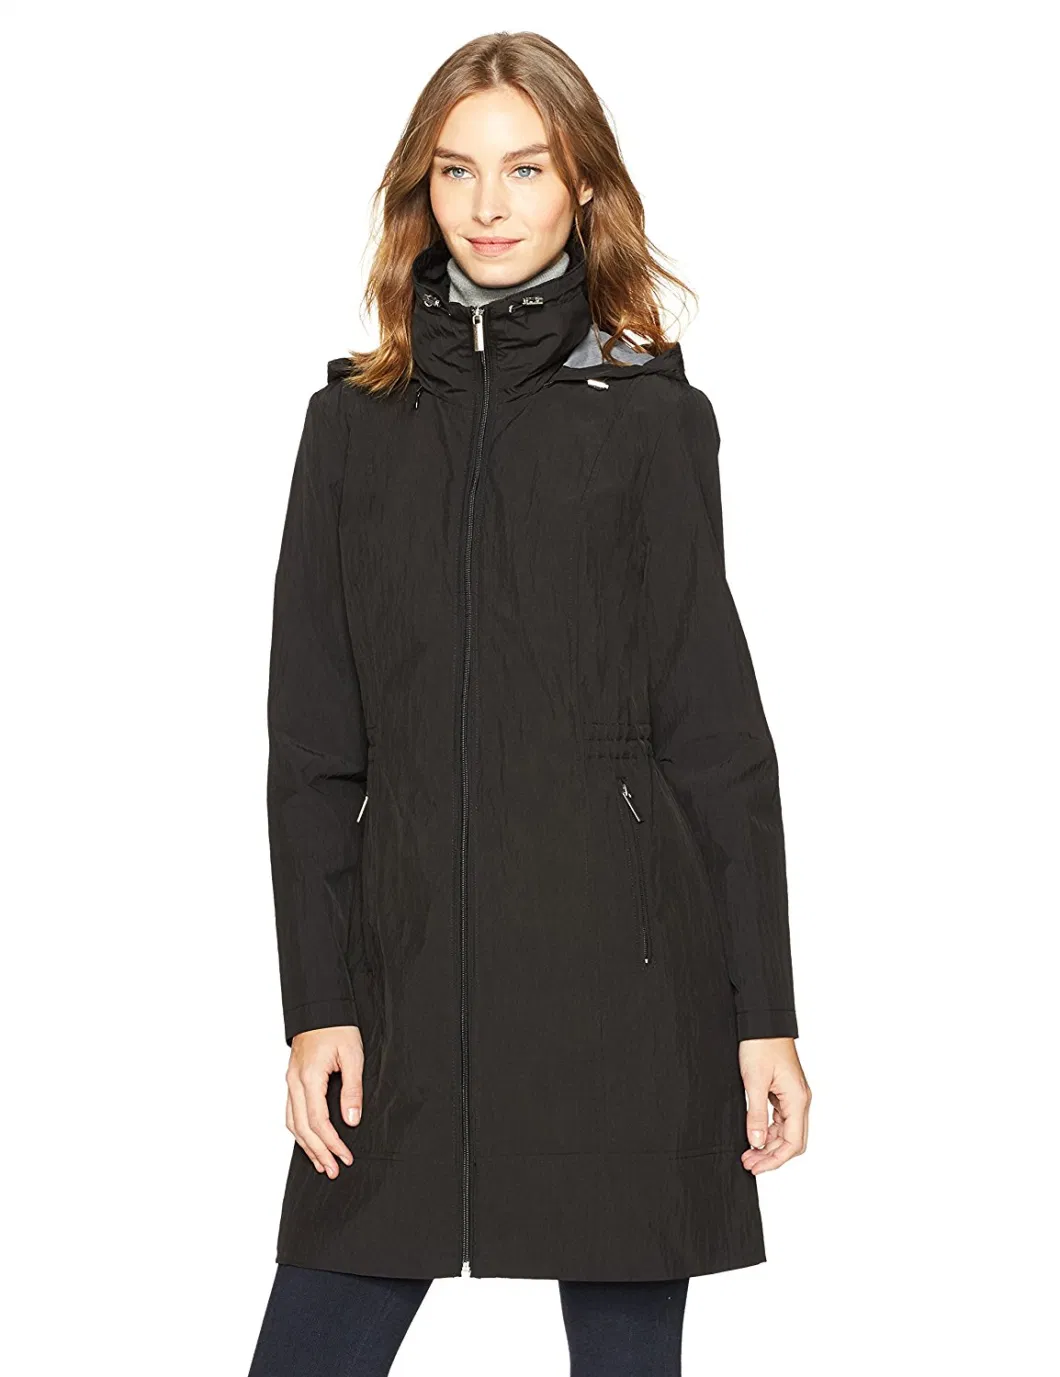 Outerwear Women&prime;s Long Windproof Rain Jacket